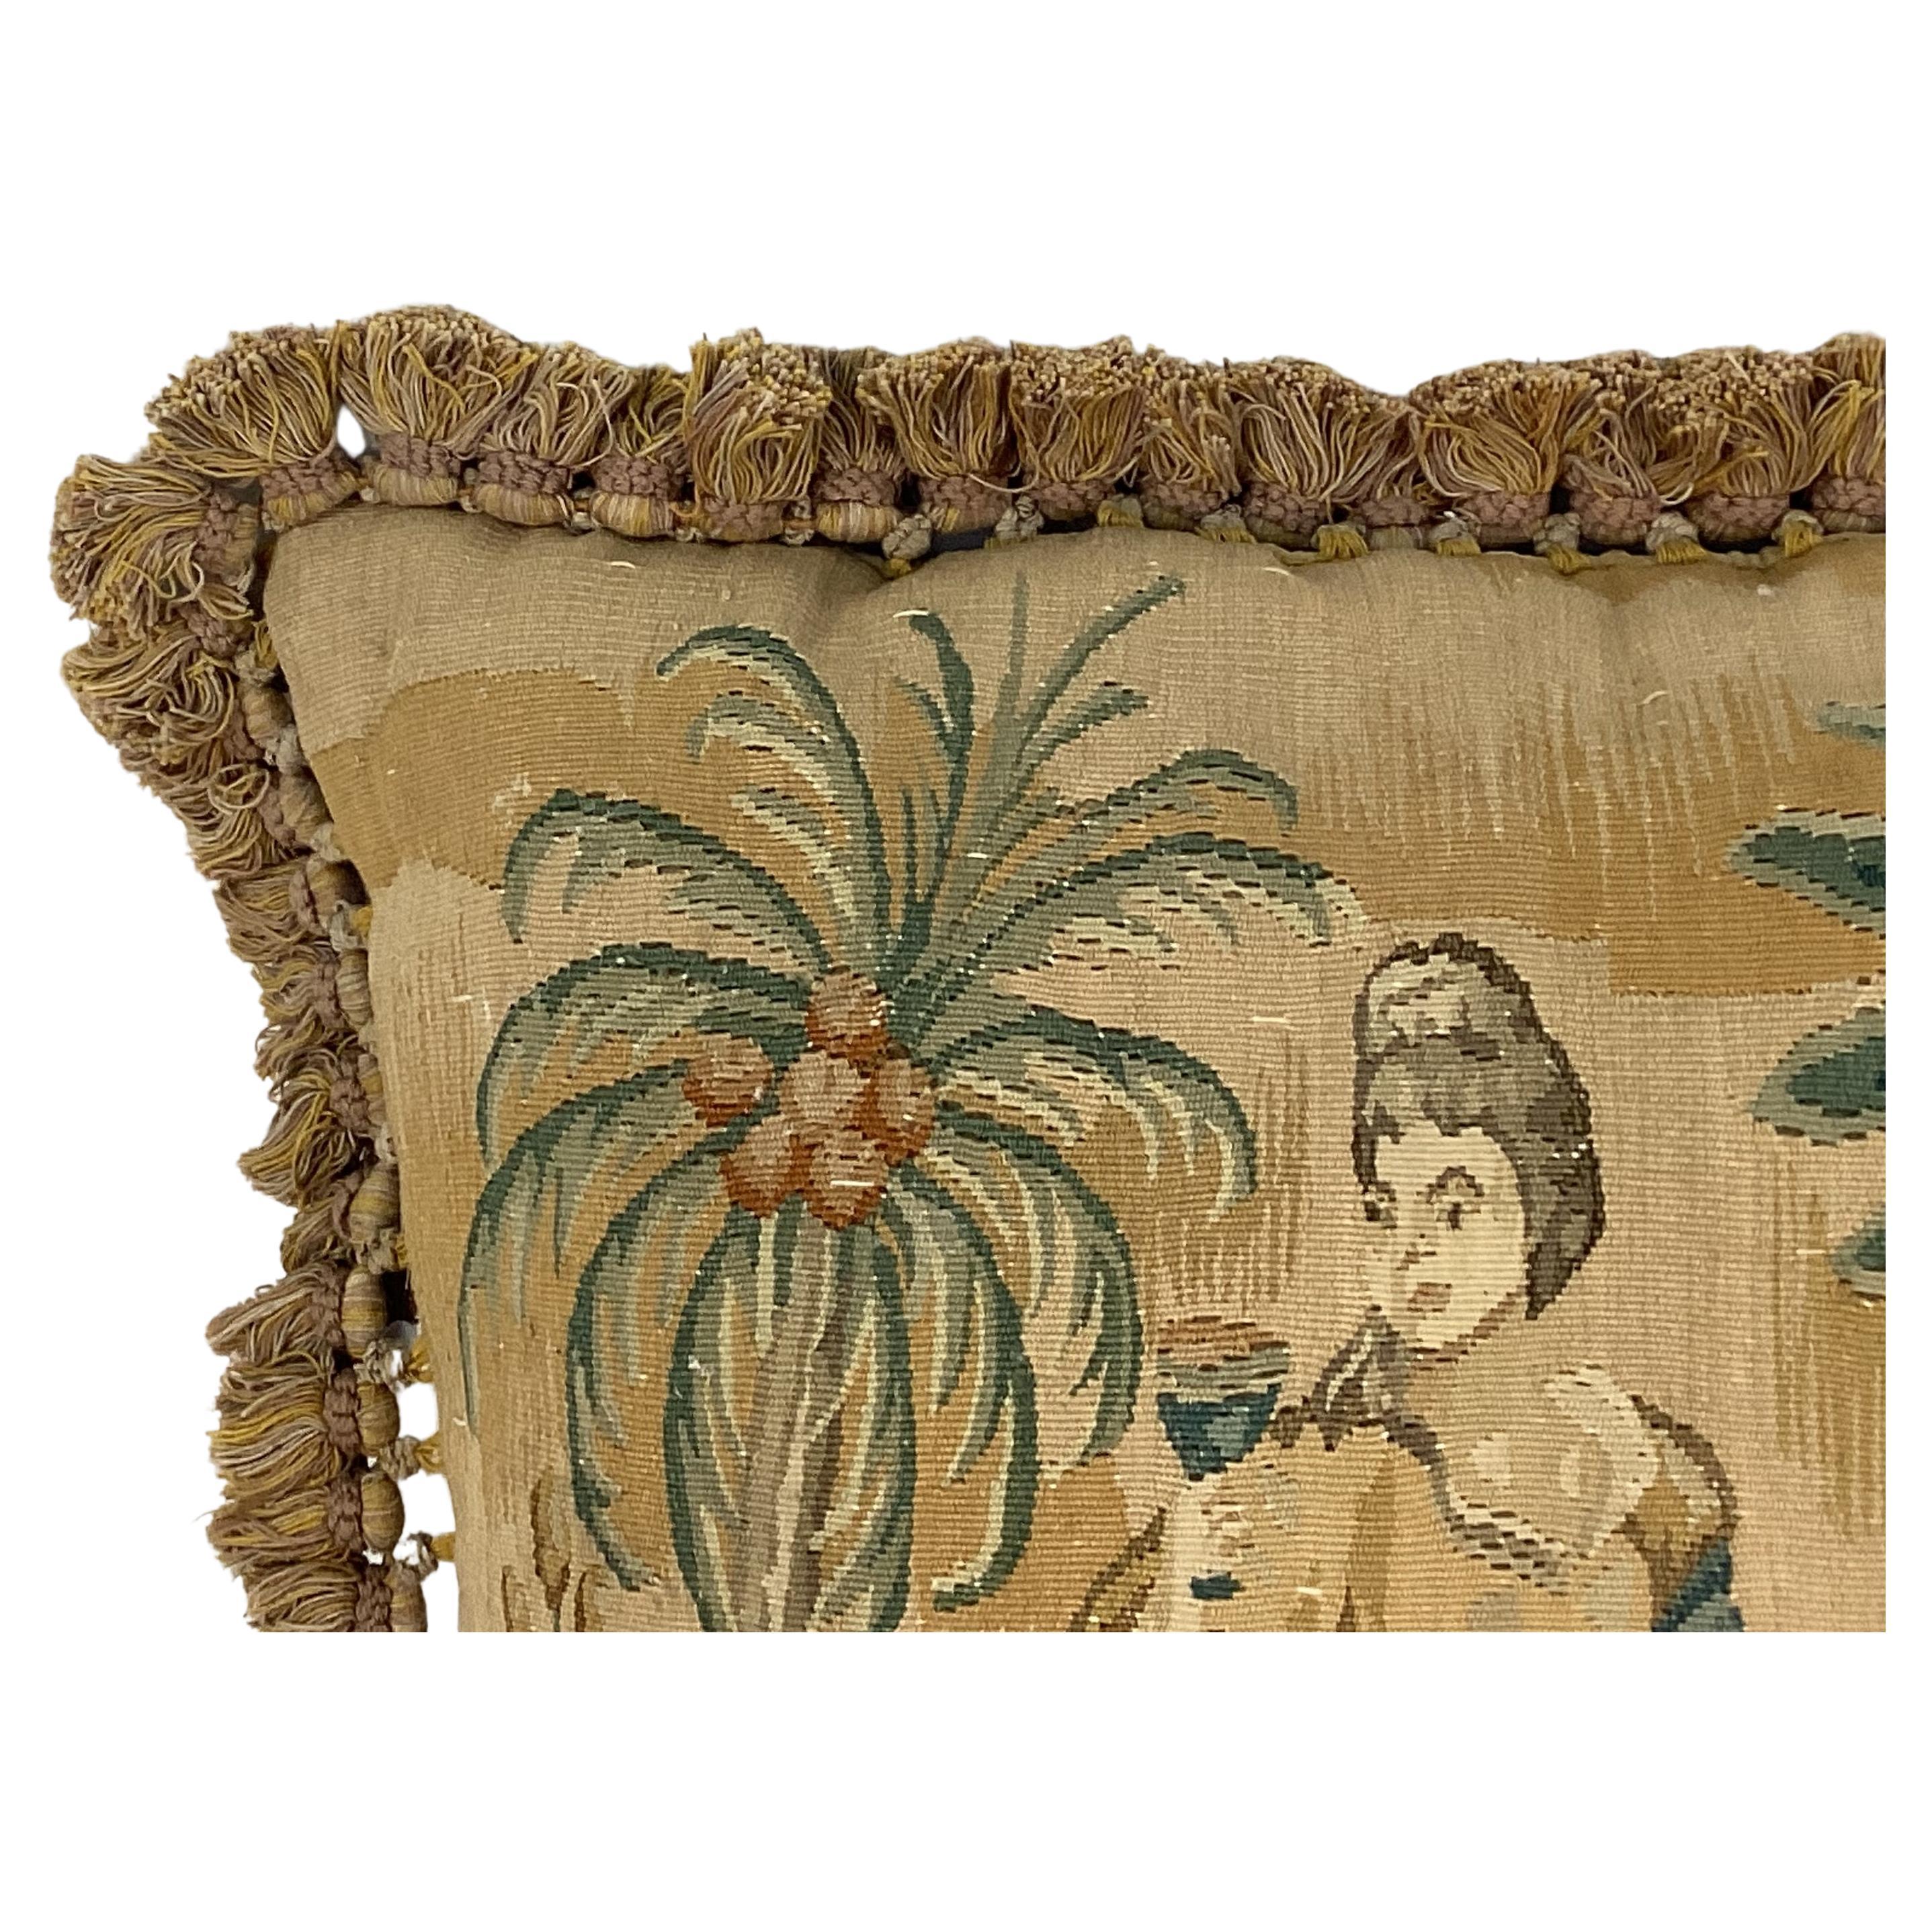 Französischer handgewebter Wandteppich aus dem 19. Jahrhundert mit Kisseneinsatz (im Lieferumfang enthalten).  Der Wandteppich zeigt eine Frau, die unter Palmen in sanften hellbraunen, grünen und braunen Farbtönen Früchte isst. Die Rückseite besteht